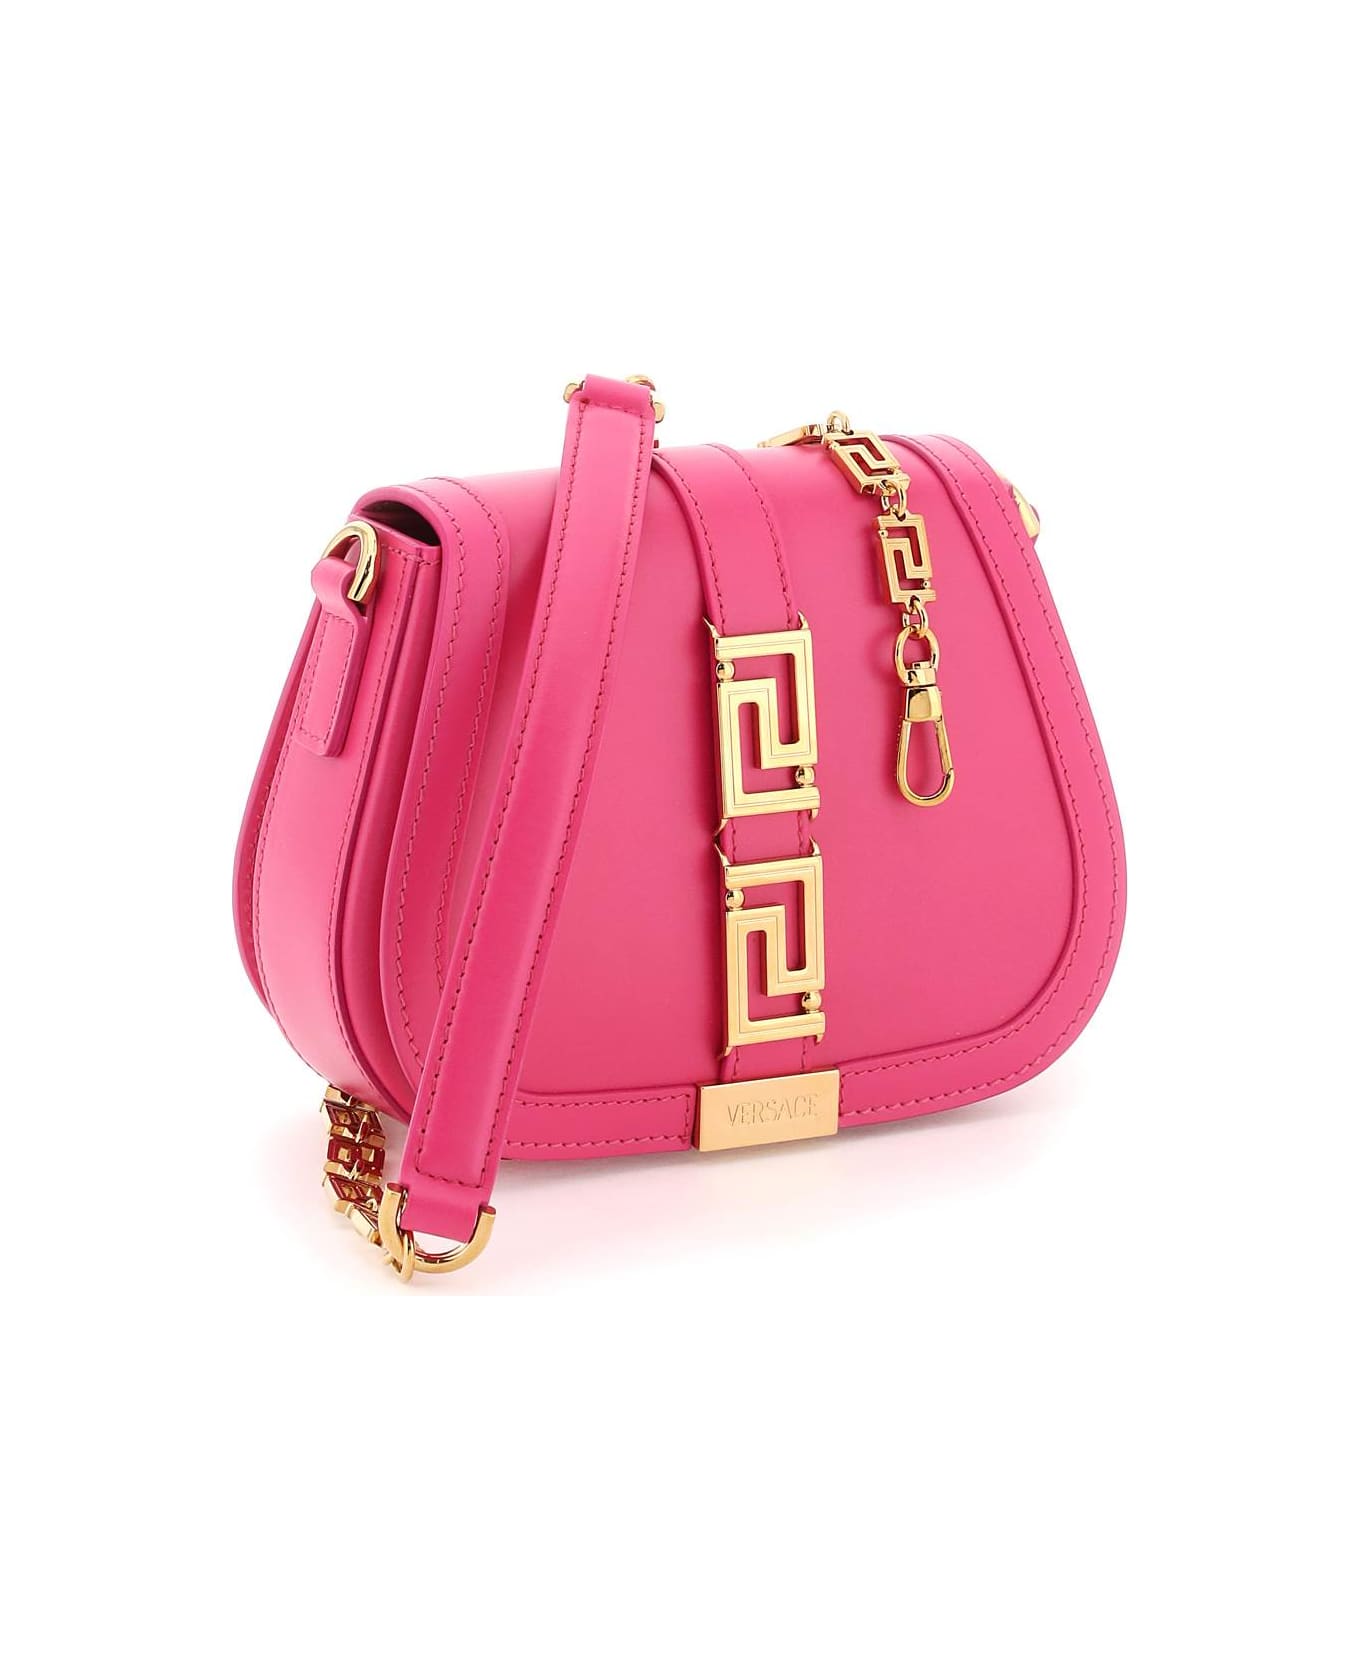 Versace Greca Goddess Leather Shoulder Bag - Pink